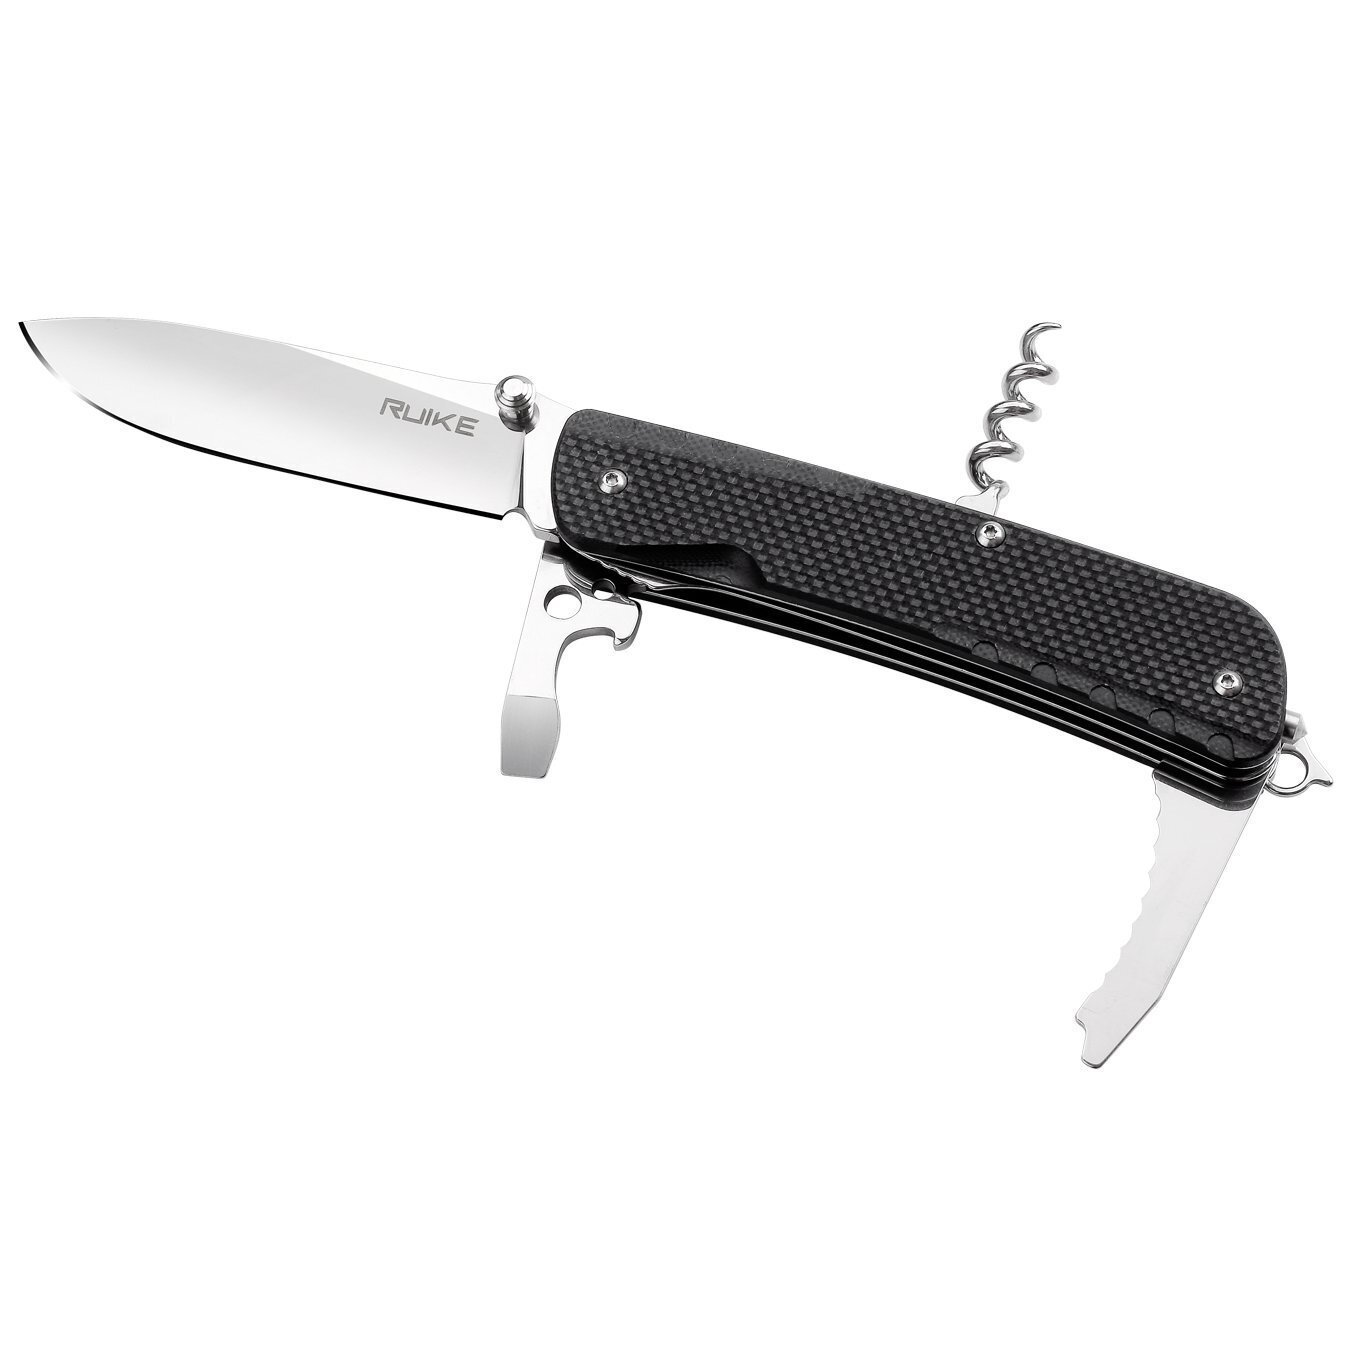 Многофункциональный нож Ruike Trekker LD21-B фото 1